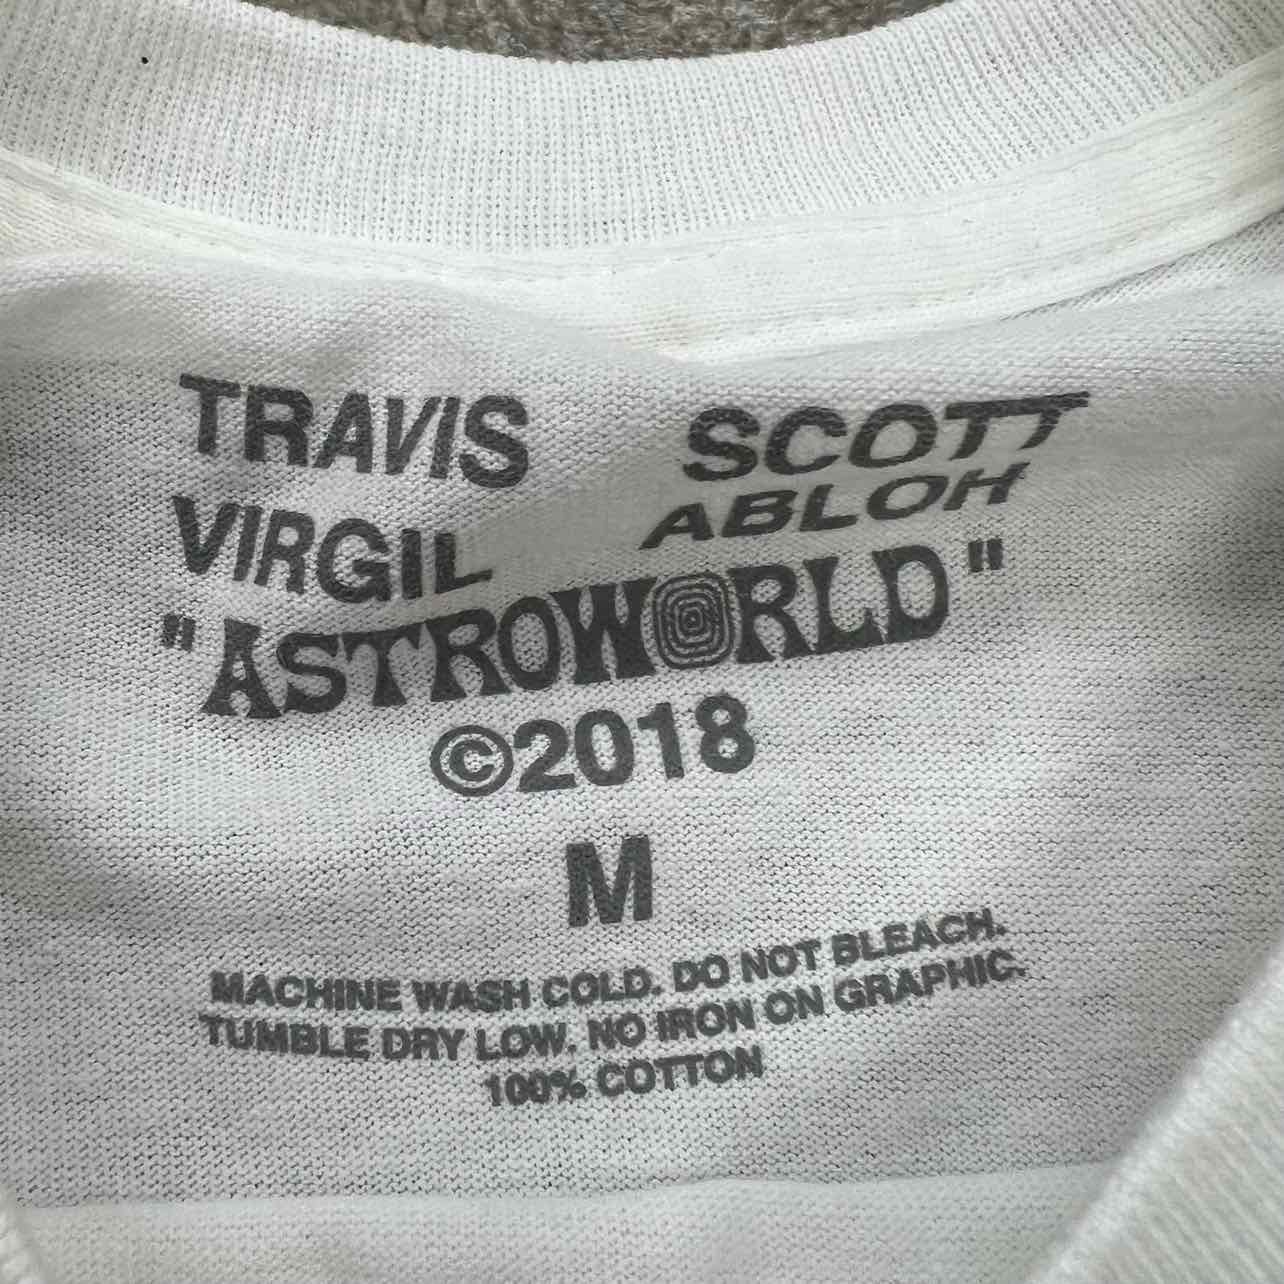 Travis Scott T-Shirt &quot;VIRGIL ABLOH&quot; White New (Cond) Size M